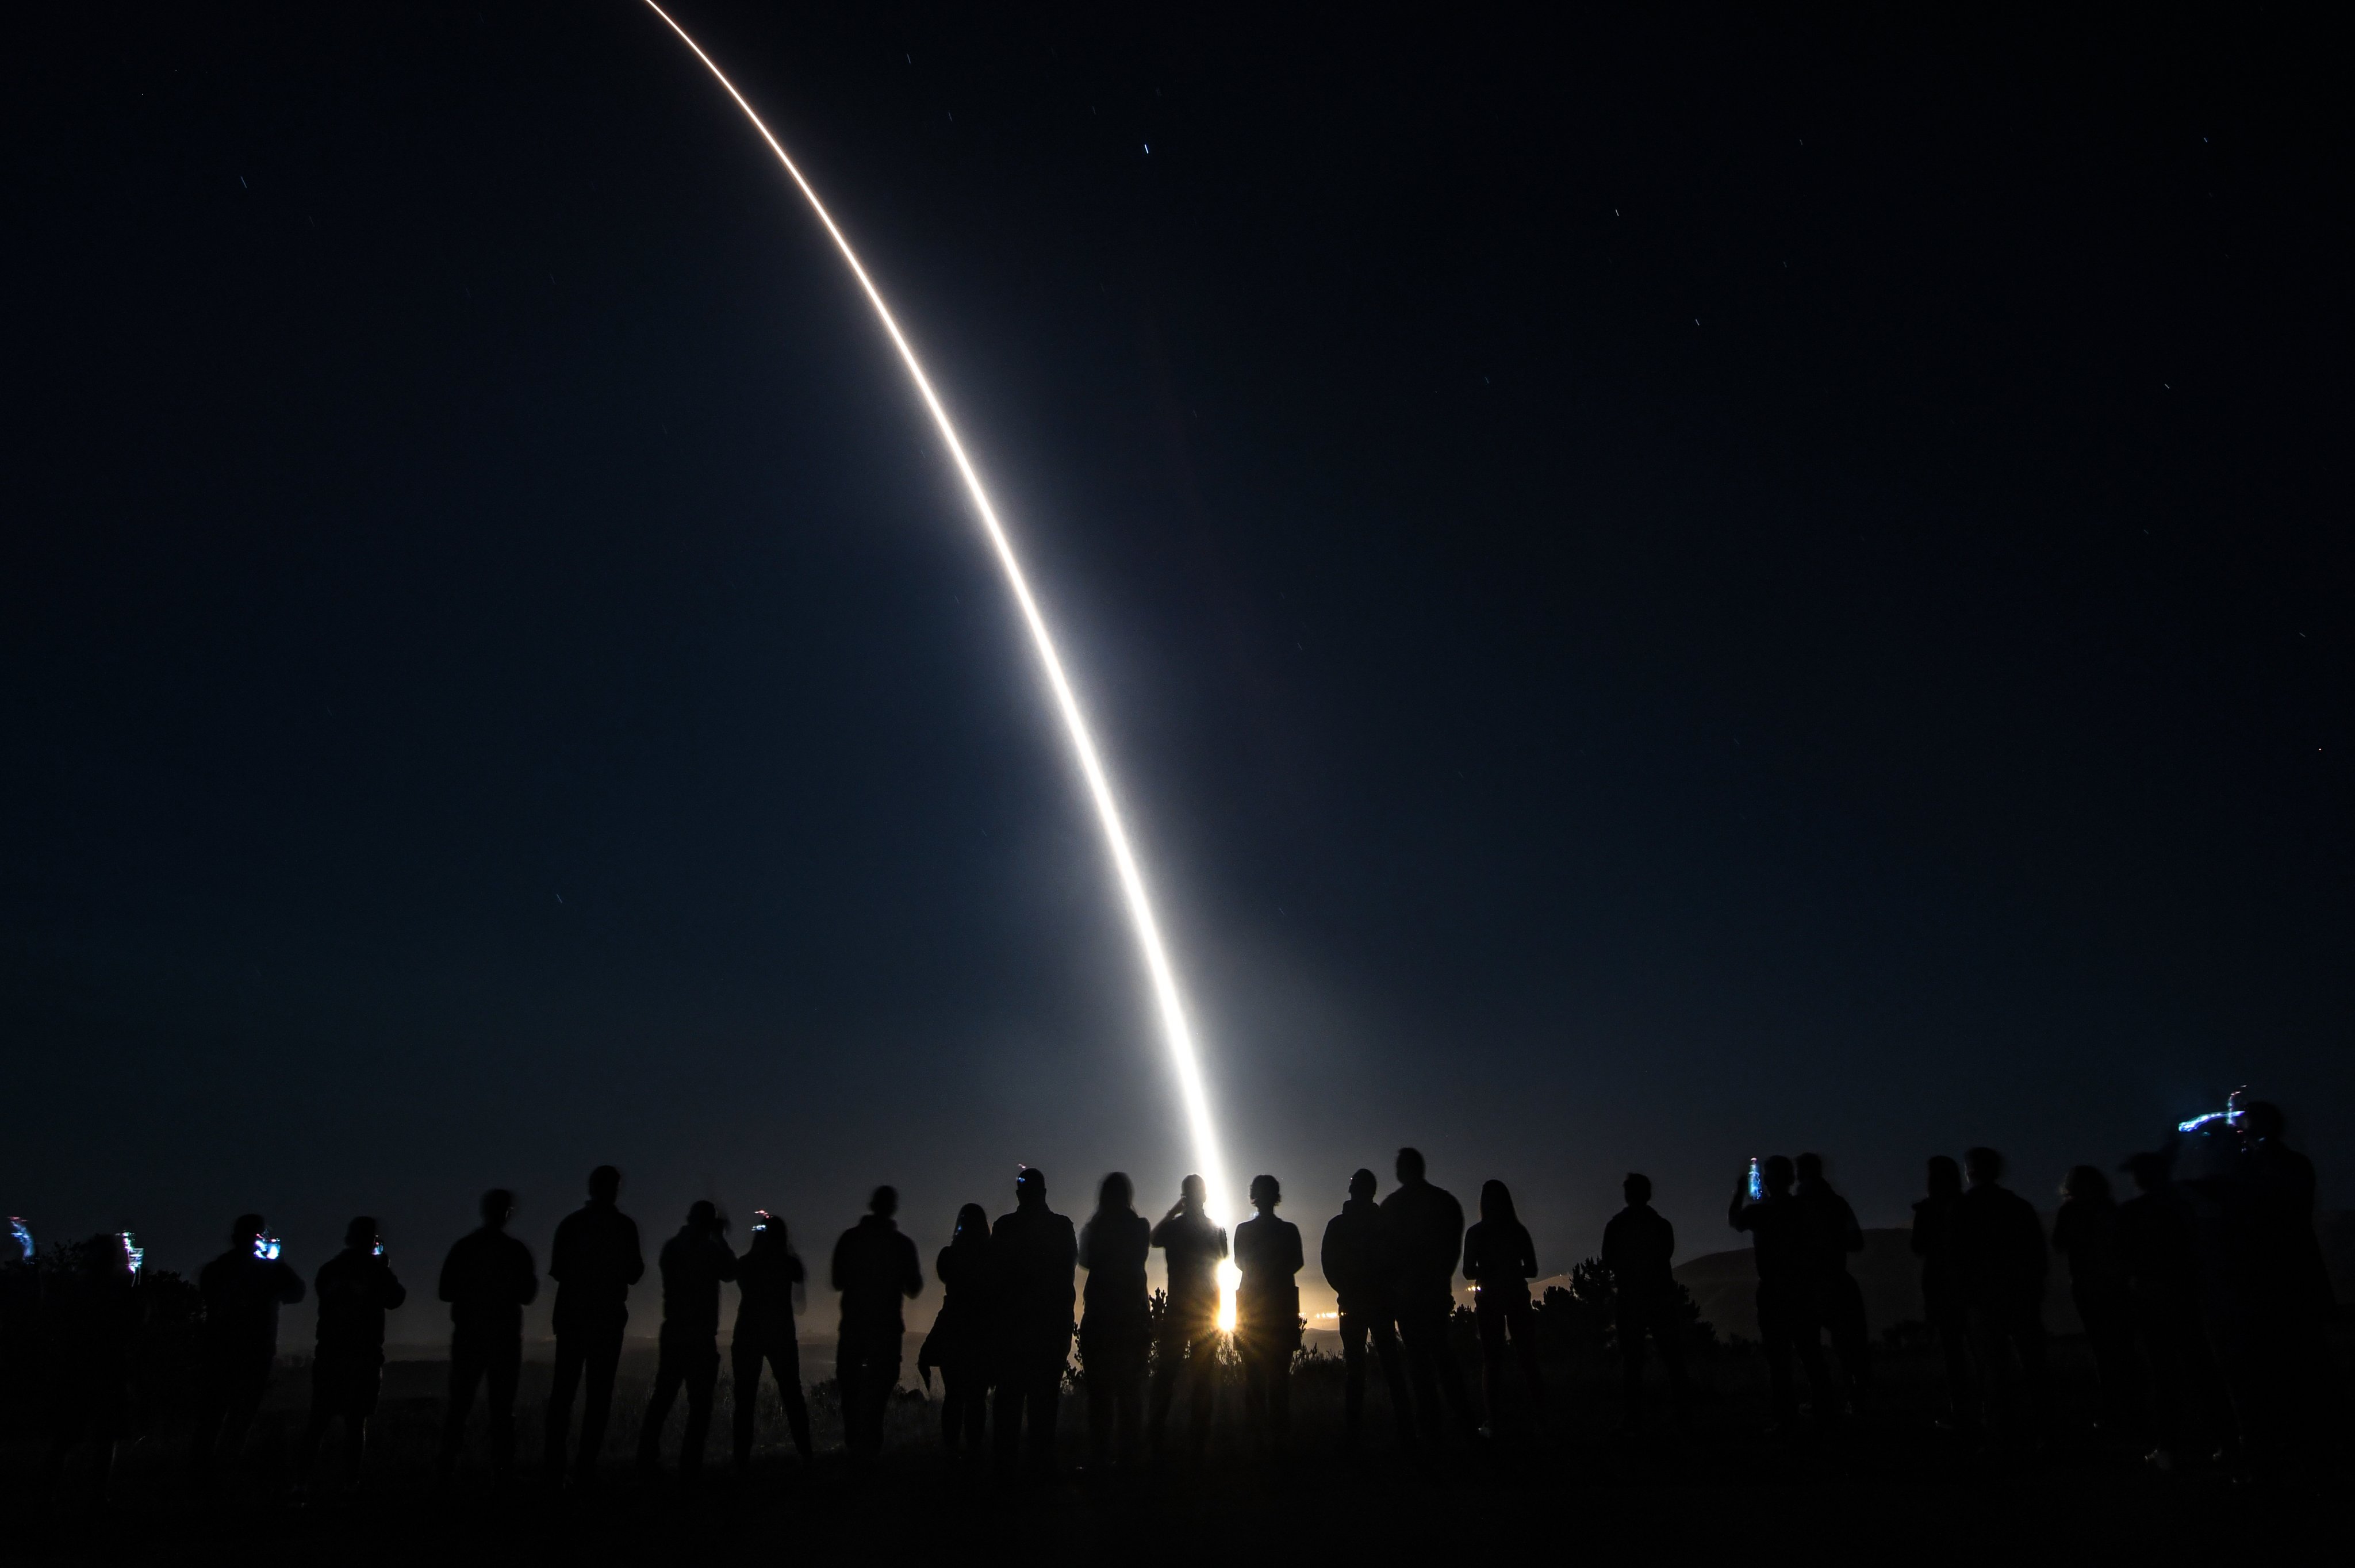 США успешно запустили межконтинентальную баллистическую ракету Minuteman III, которая может нести ядерные боеголовки и поражать цели на дальности 12 